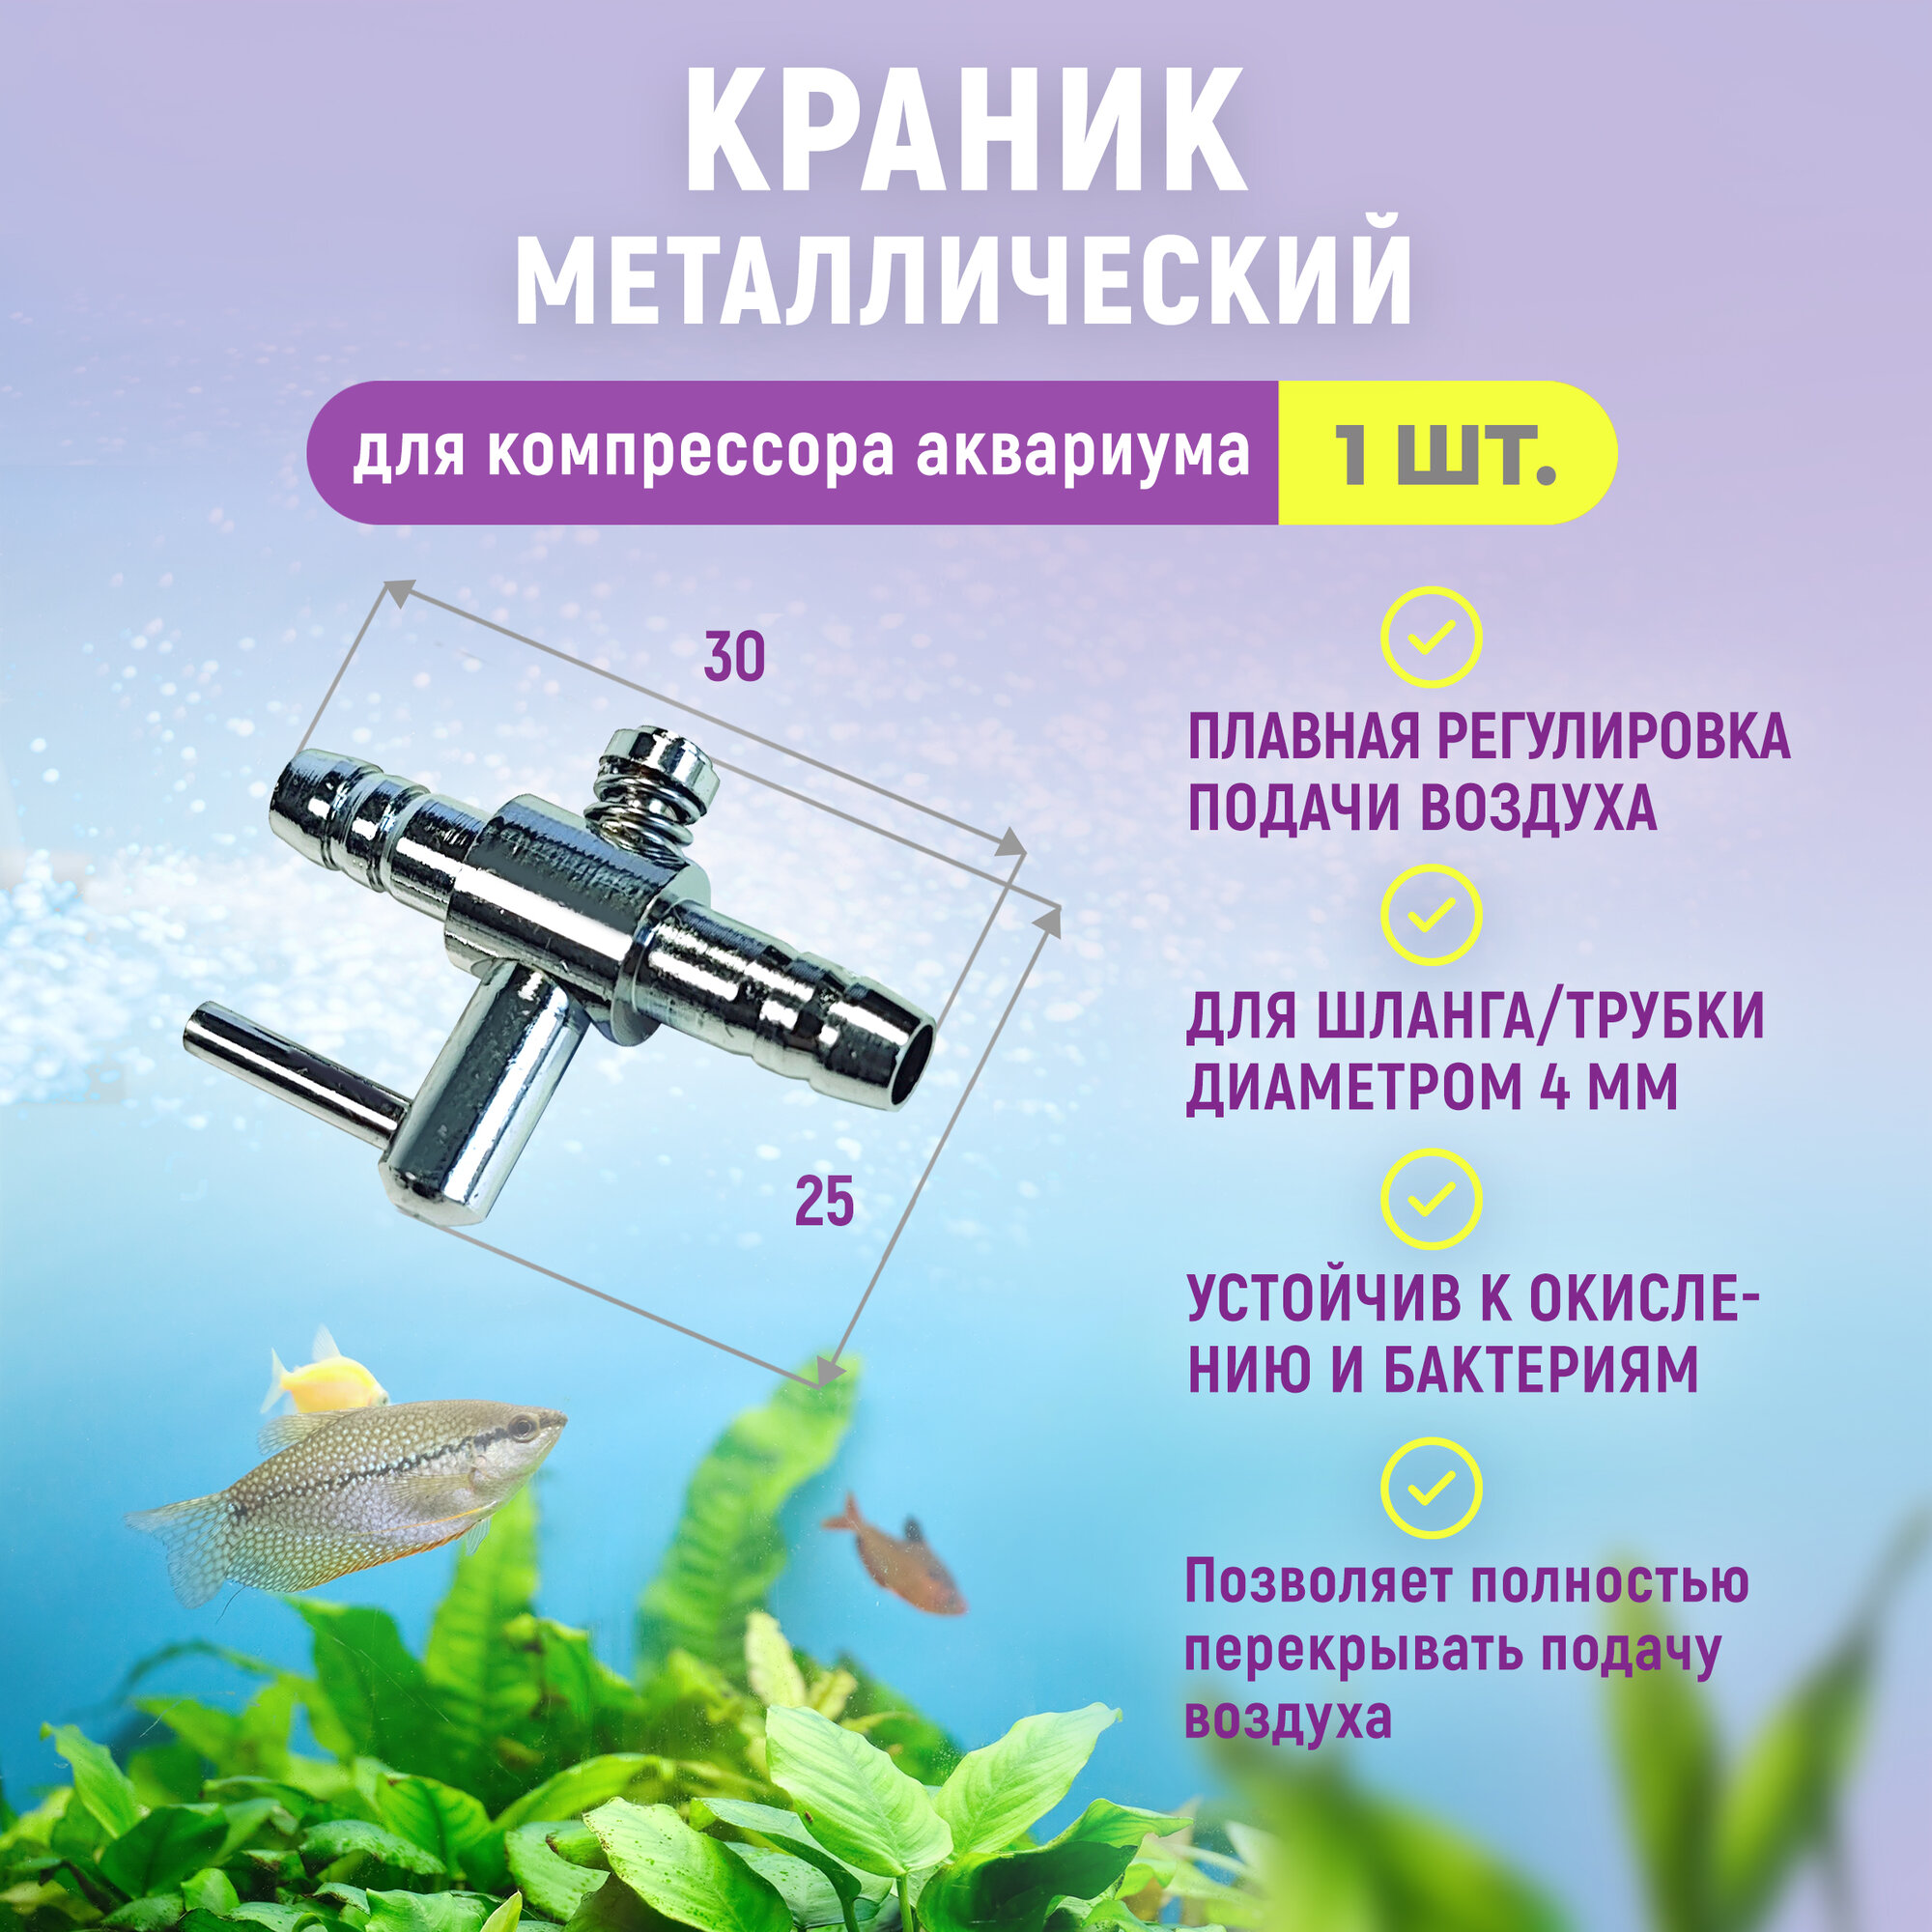 Краник металлический (медный хромированный) для аквариума